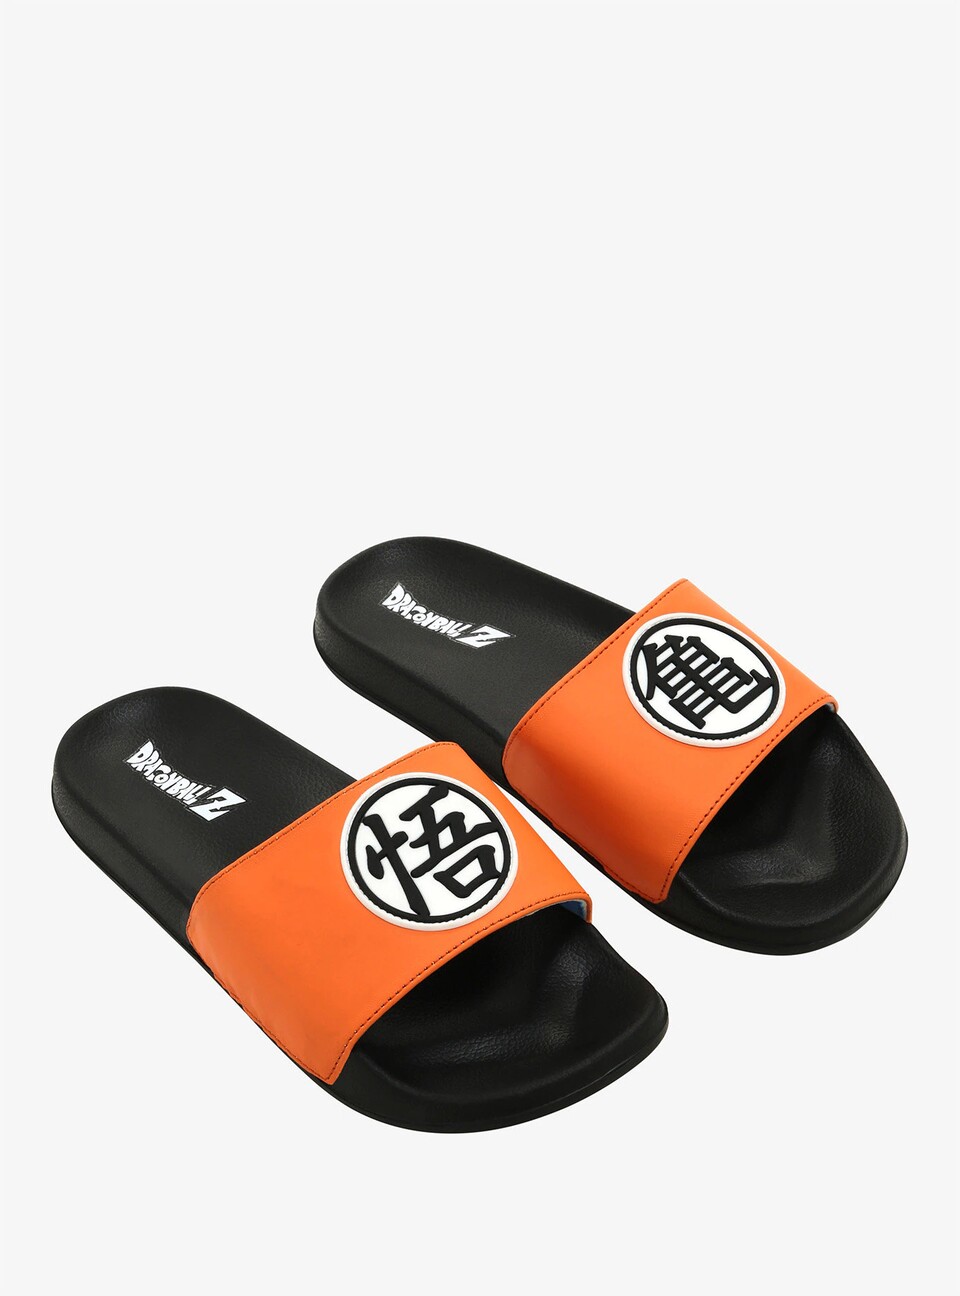 Dragon Ball Z-Schuhe auch mal als Badelatschen!